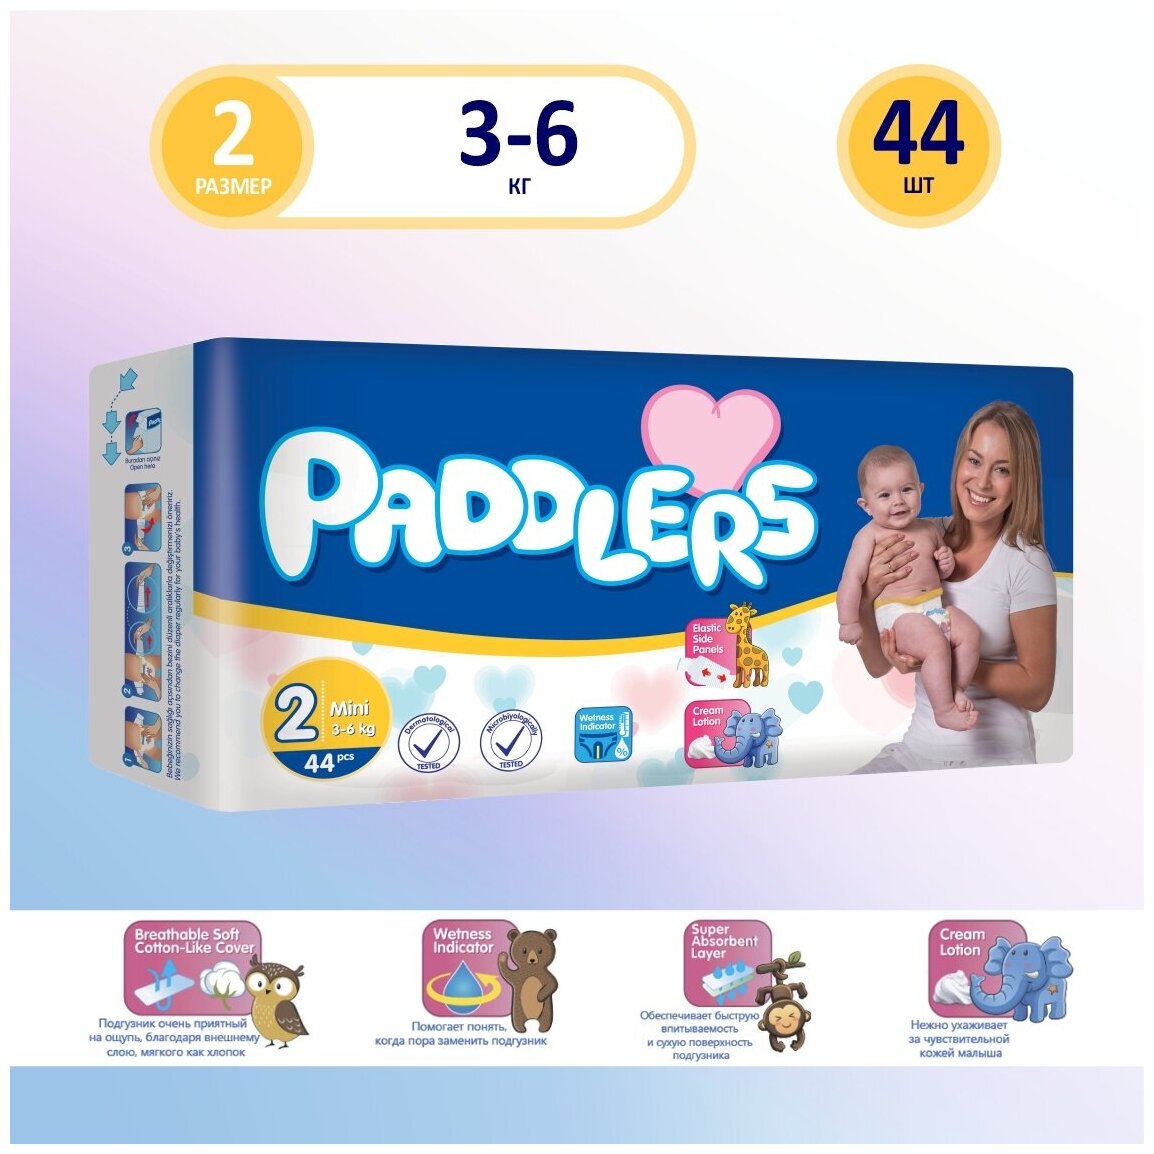 Подгузники 2 размер PADDLERS для новорожденных детей весом 3-6 кг, 44 шт.